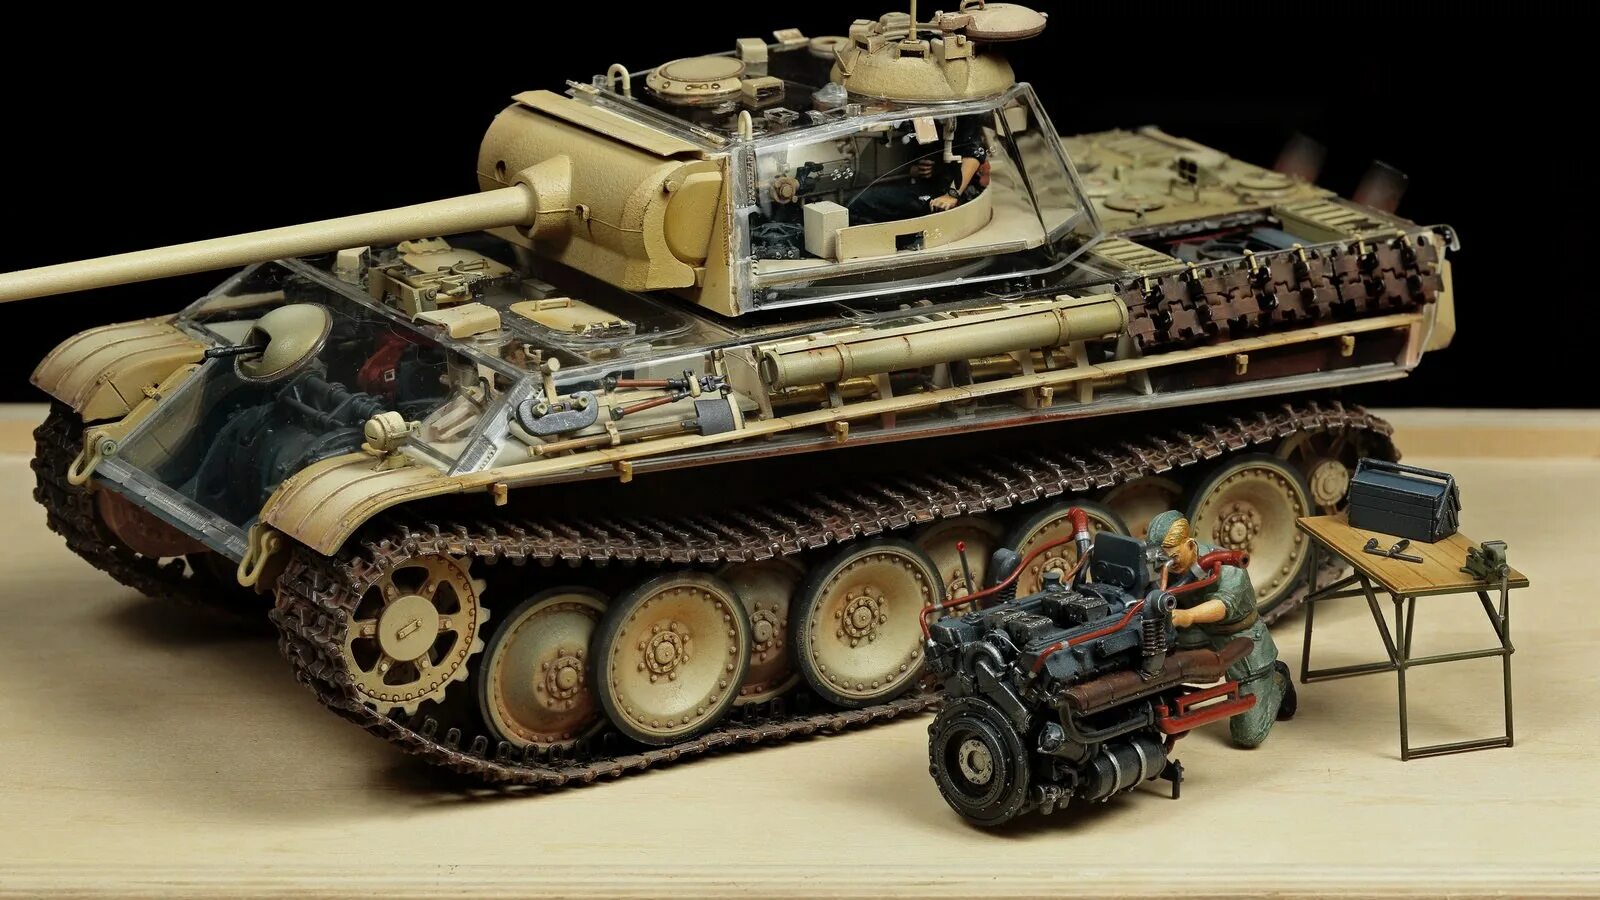 Пантера 1/35 RFM. Panther Ausf g 1/35 Tamiya. RFM model пантера Ausf. Panther II 1/35. Модель д е